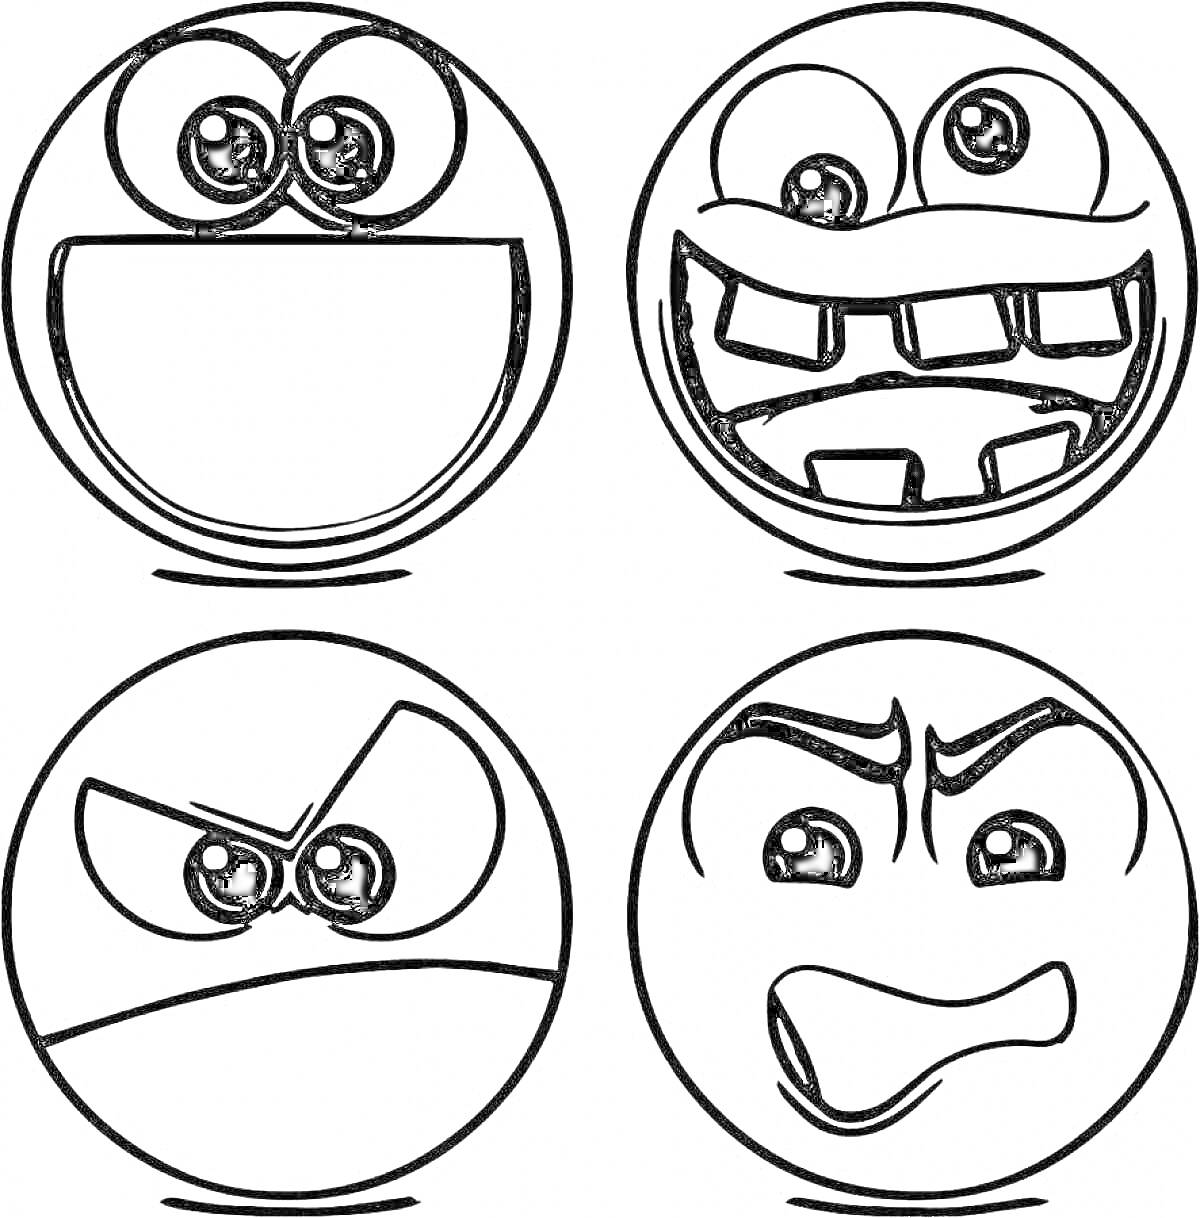 Раскраска Четыре круга с лицами, выражающие разные эмоции: радость, страх, злость, агрессию